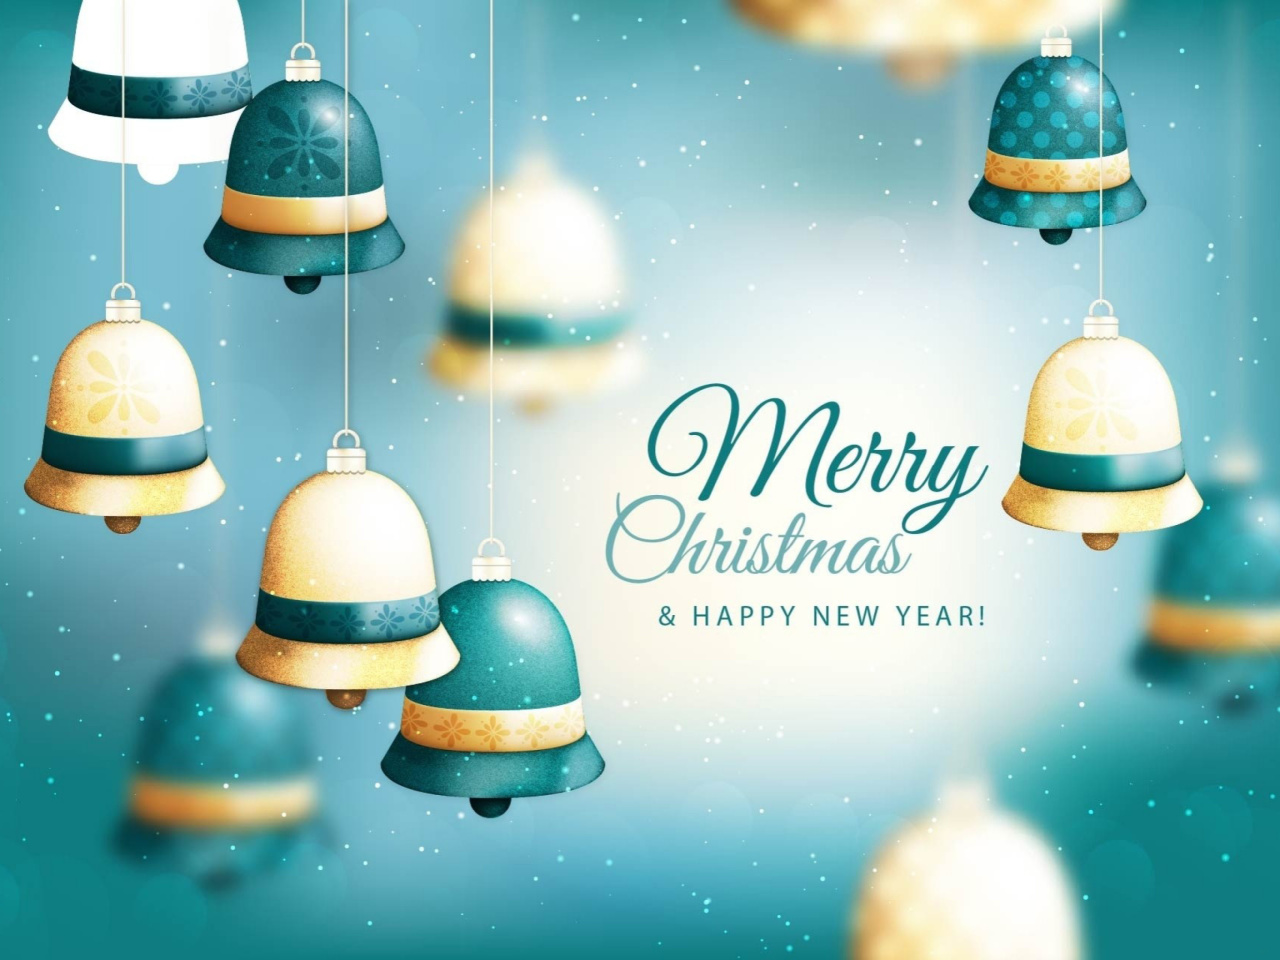 Merry Christmas Bells wallpaper 1280x960